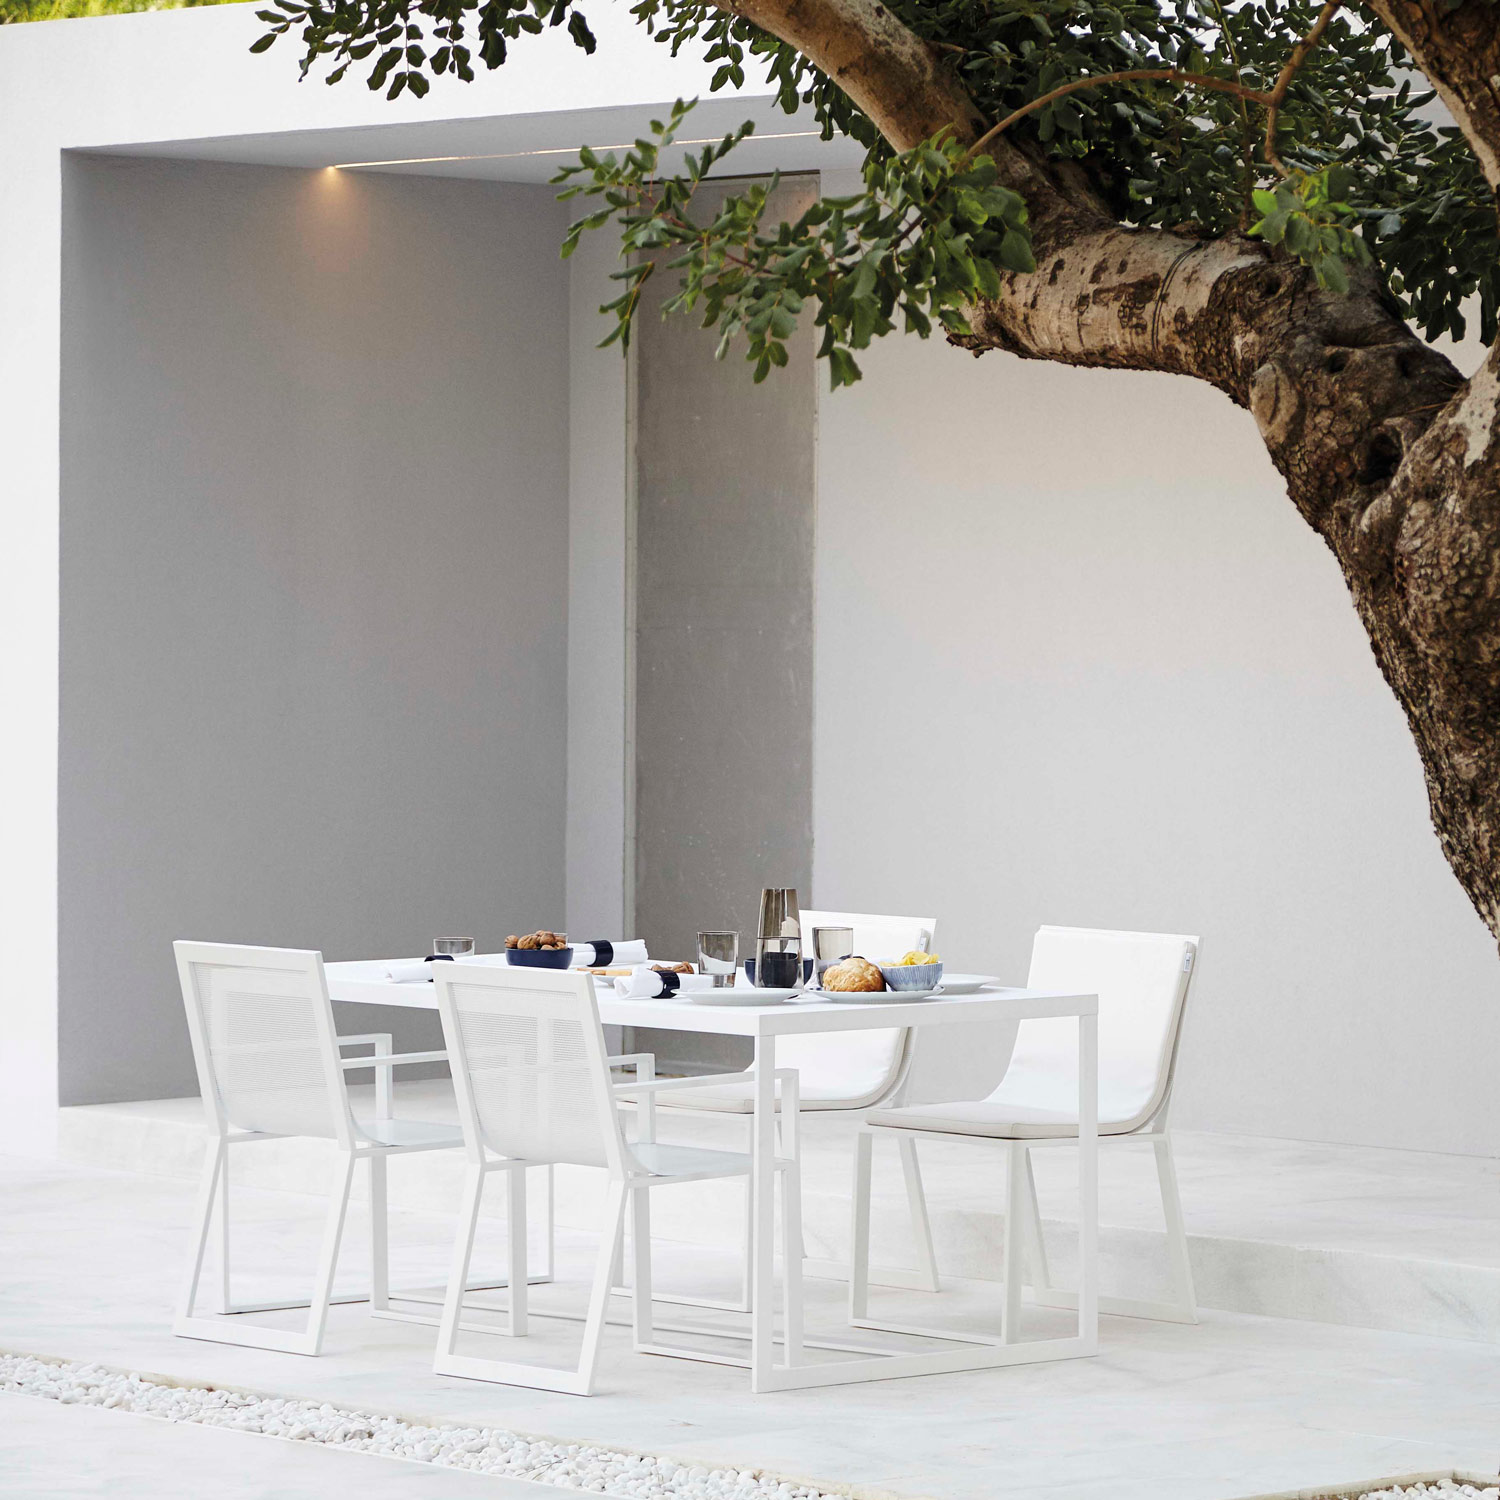 Blau luksus design møbler med hvide stole og spisebord fra Gitz Design og Gandia Blasco